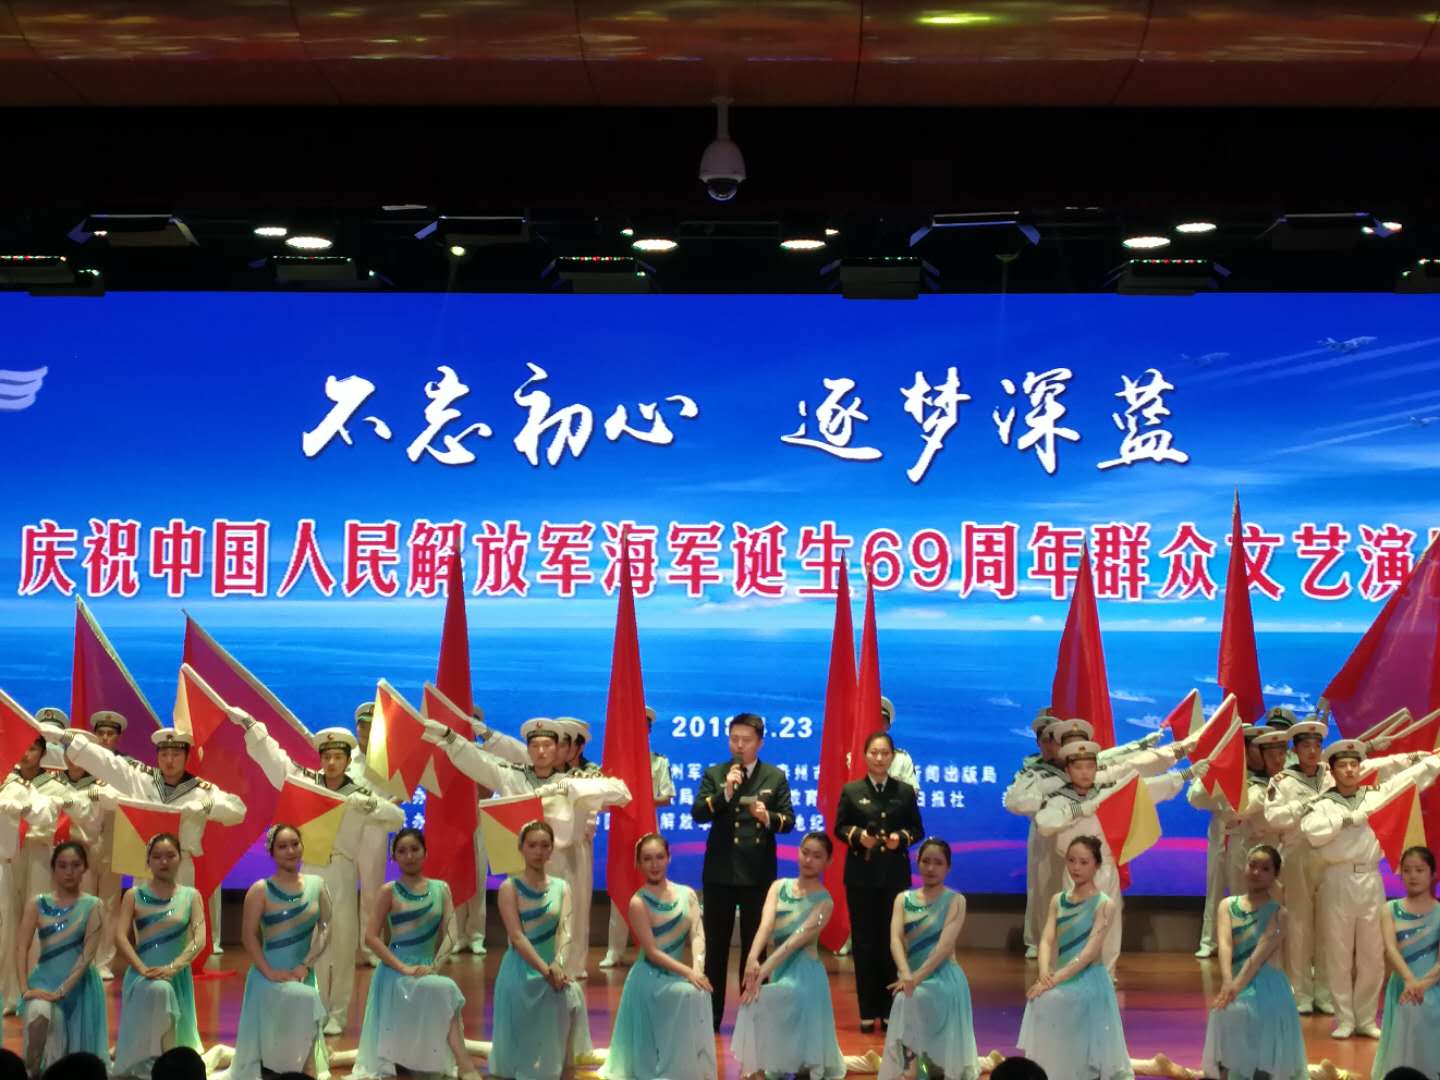 兵唱响!泰州市举行庆祝人民海军诞生69周年群